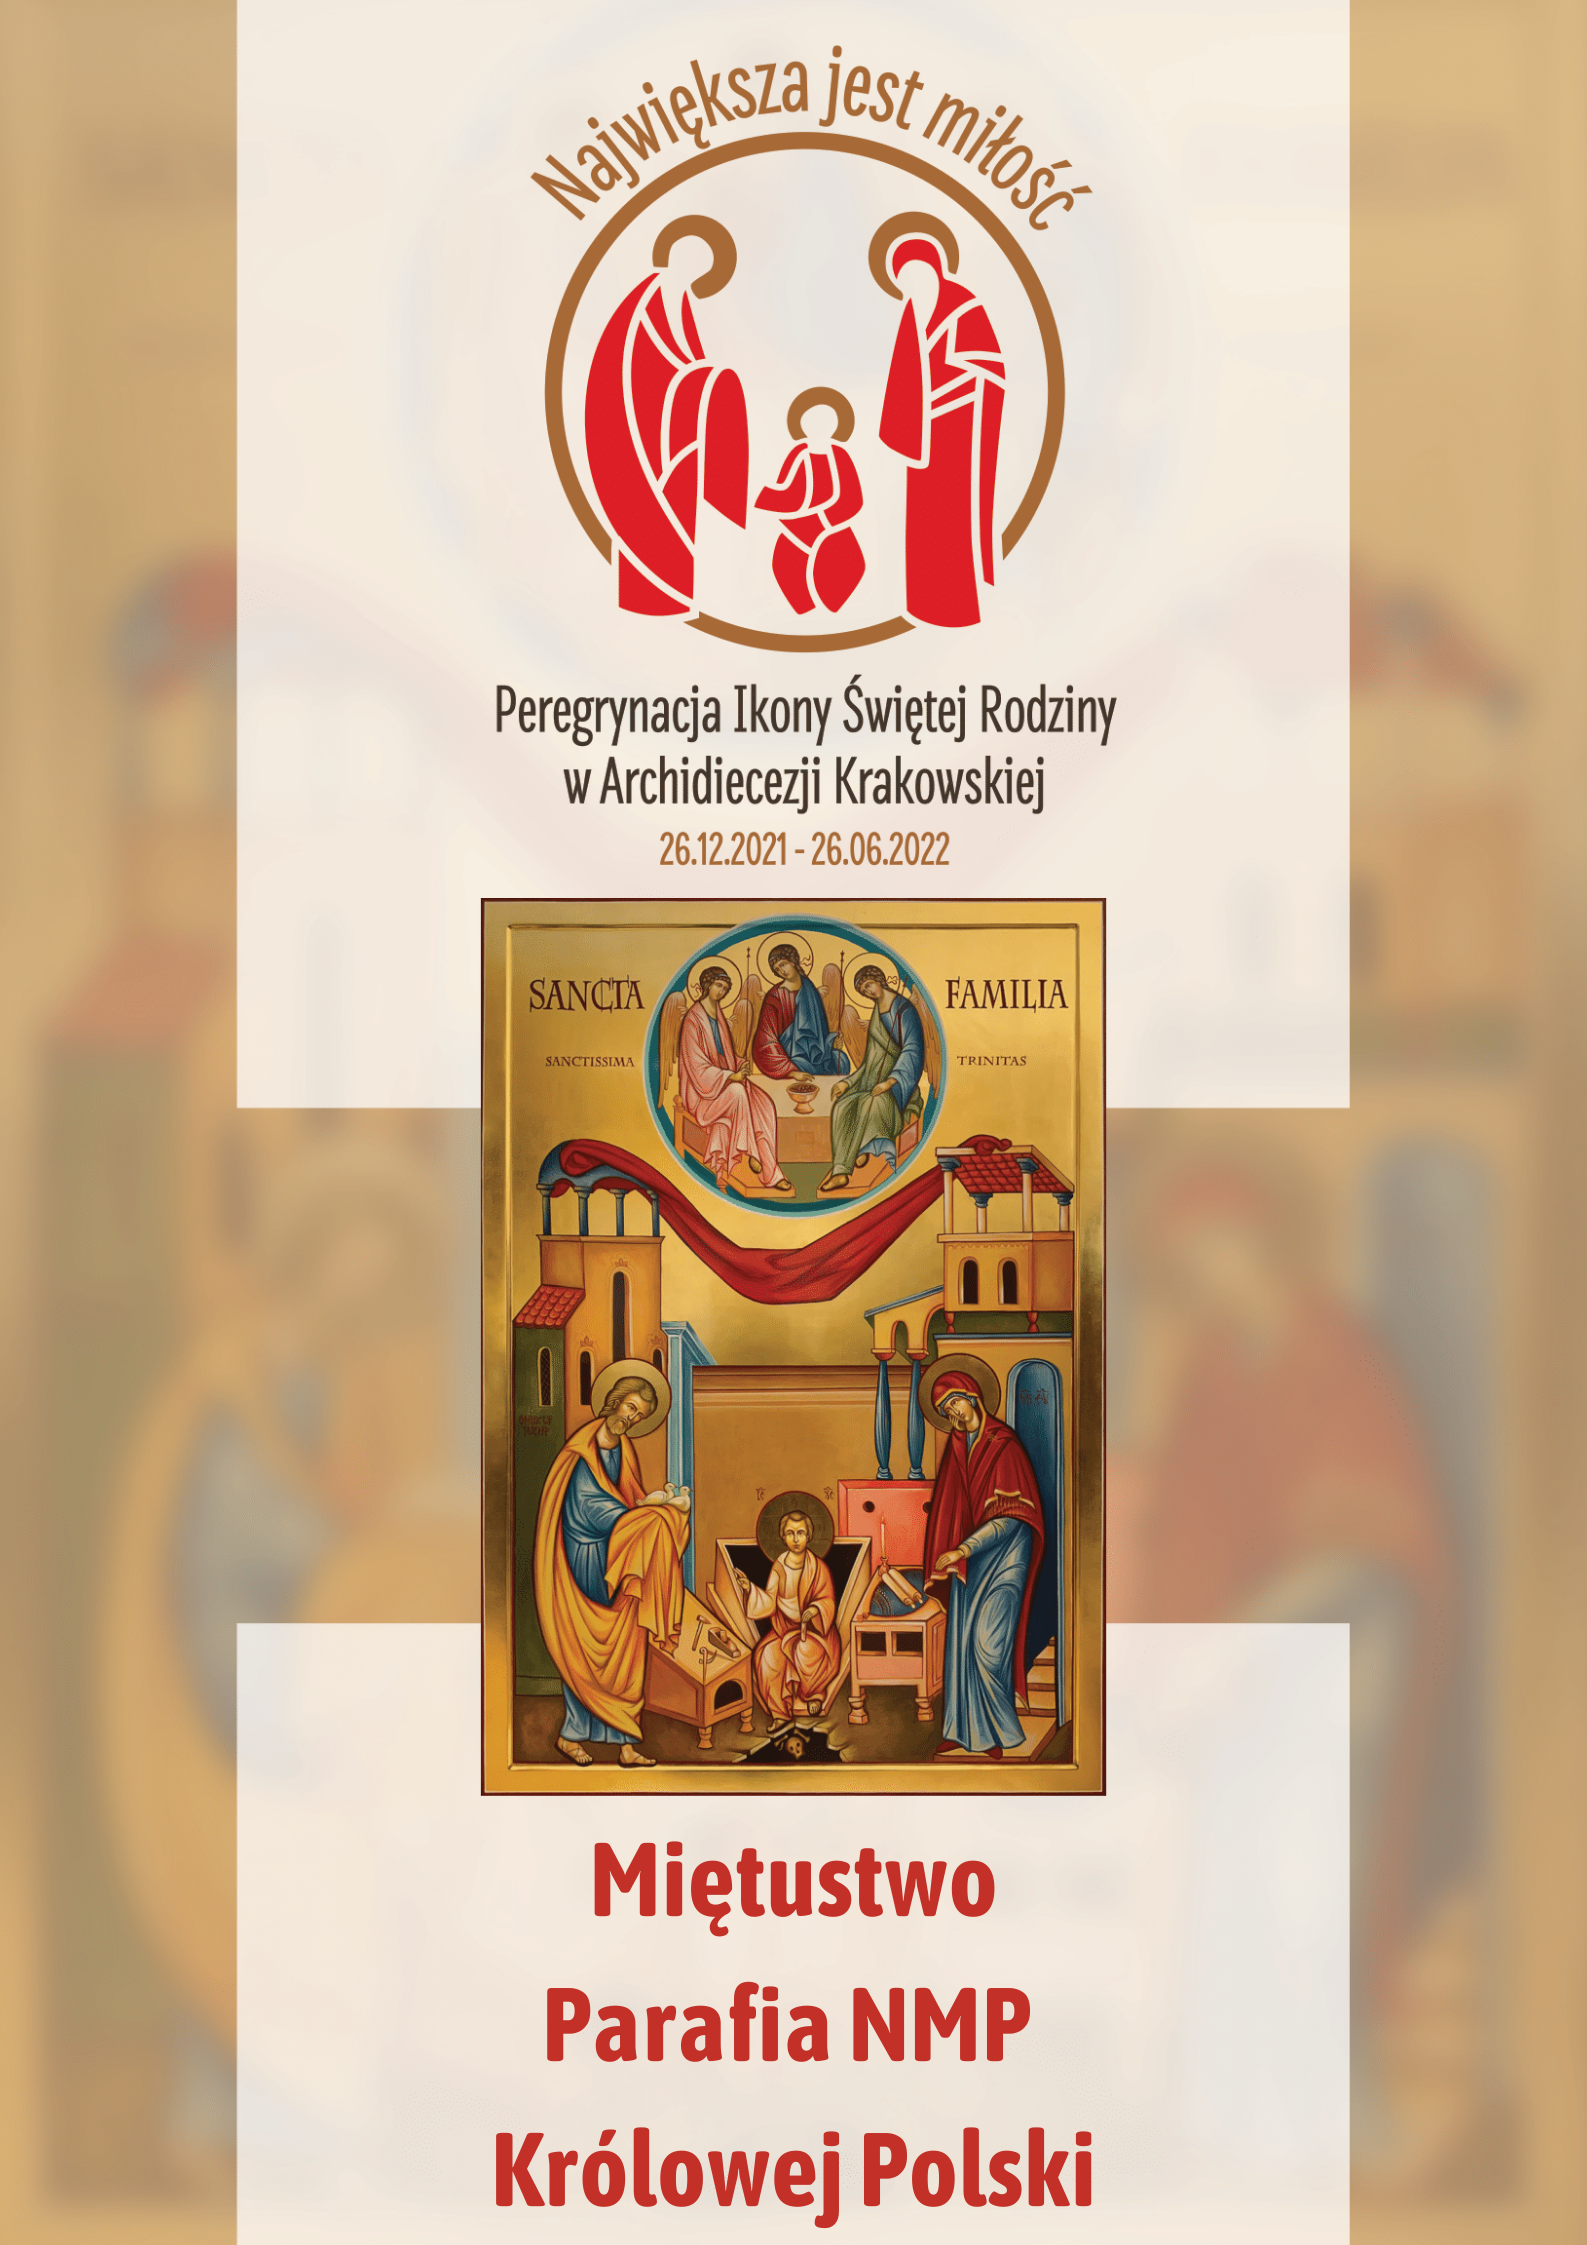 Ikona Świętej Rodziny w parafii Najświętszej Maryi Panny Królowej Polski w Miętustwie